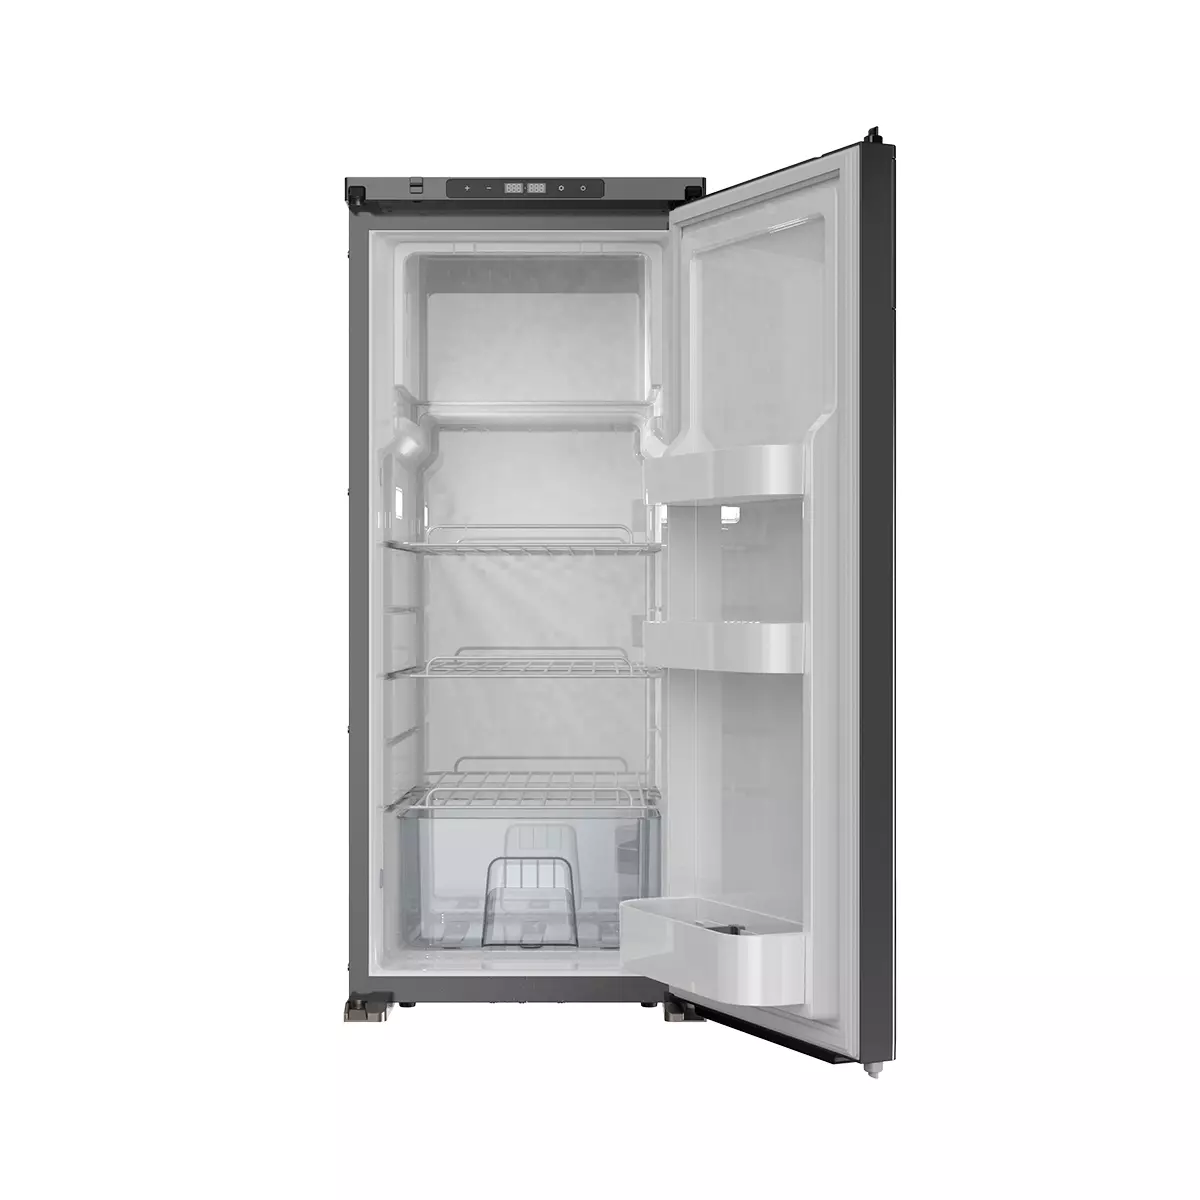 Холодильник MobileComfort MCR-90, встраиваемый компрессорный,90 литров,12/24В